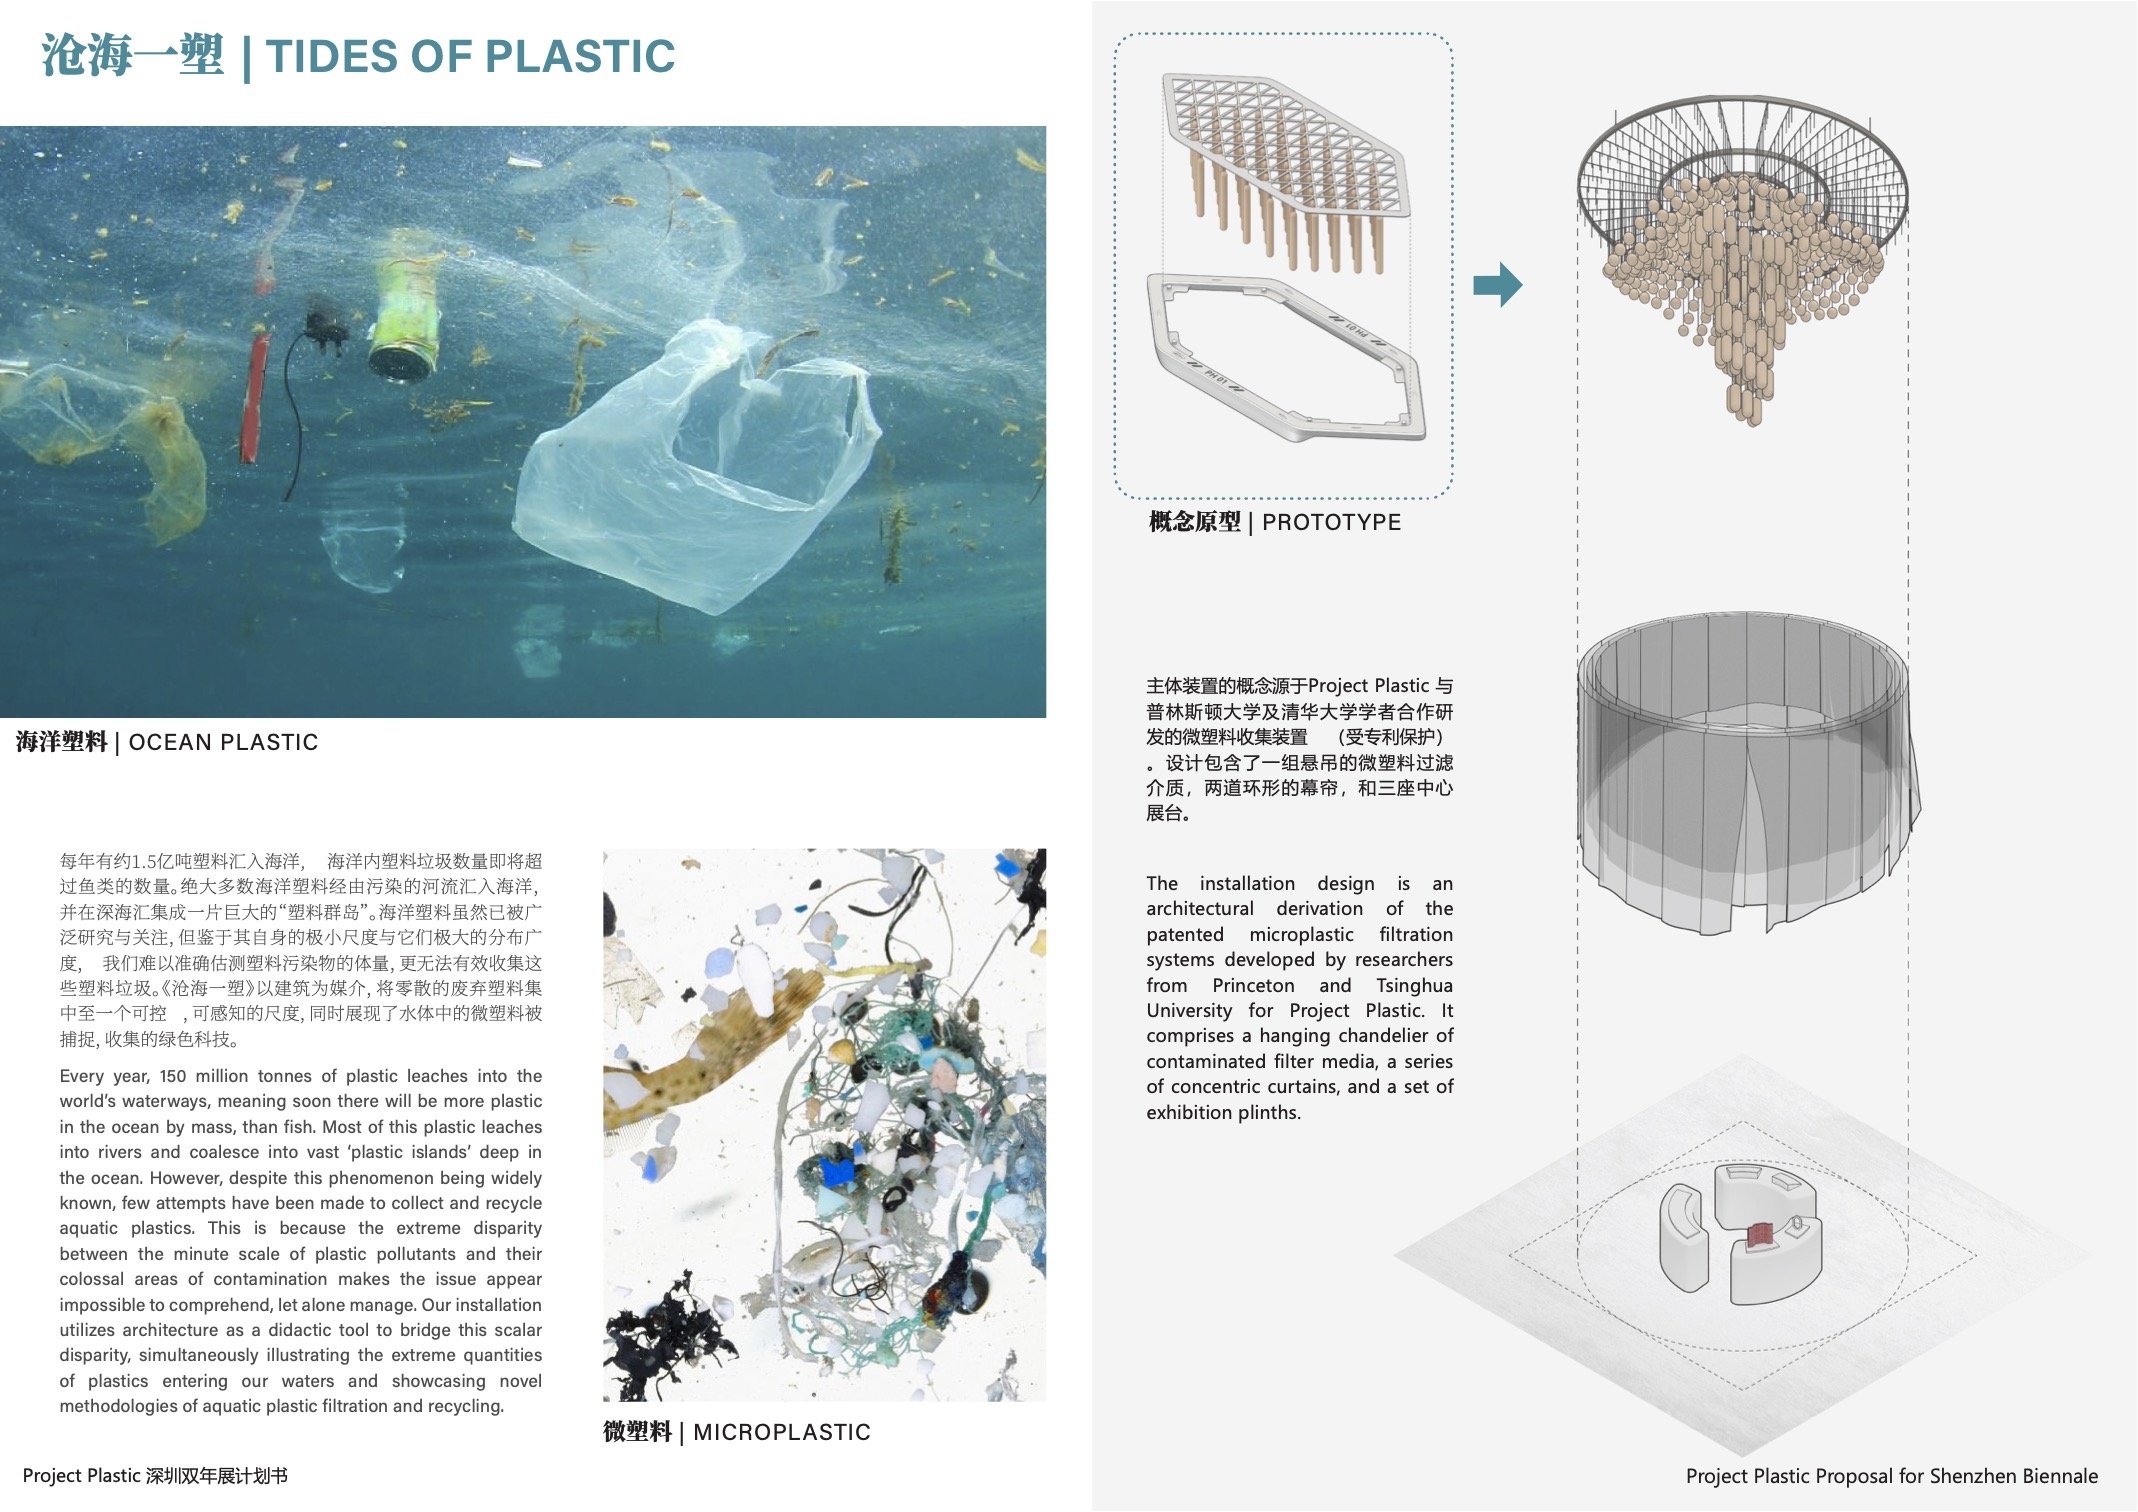 [FINAL] Project Plastic_Shenzhen Biennale2.jpg